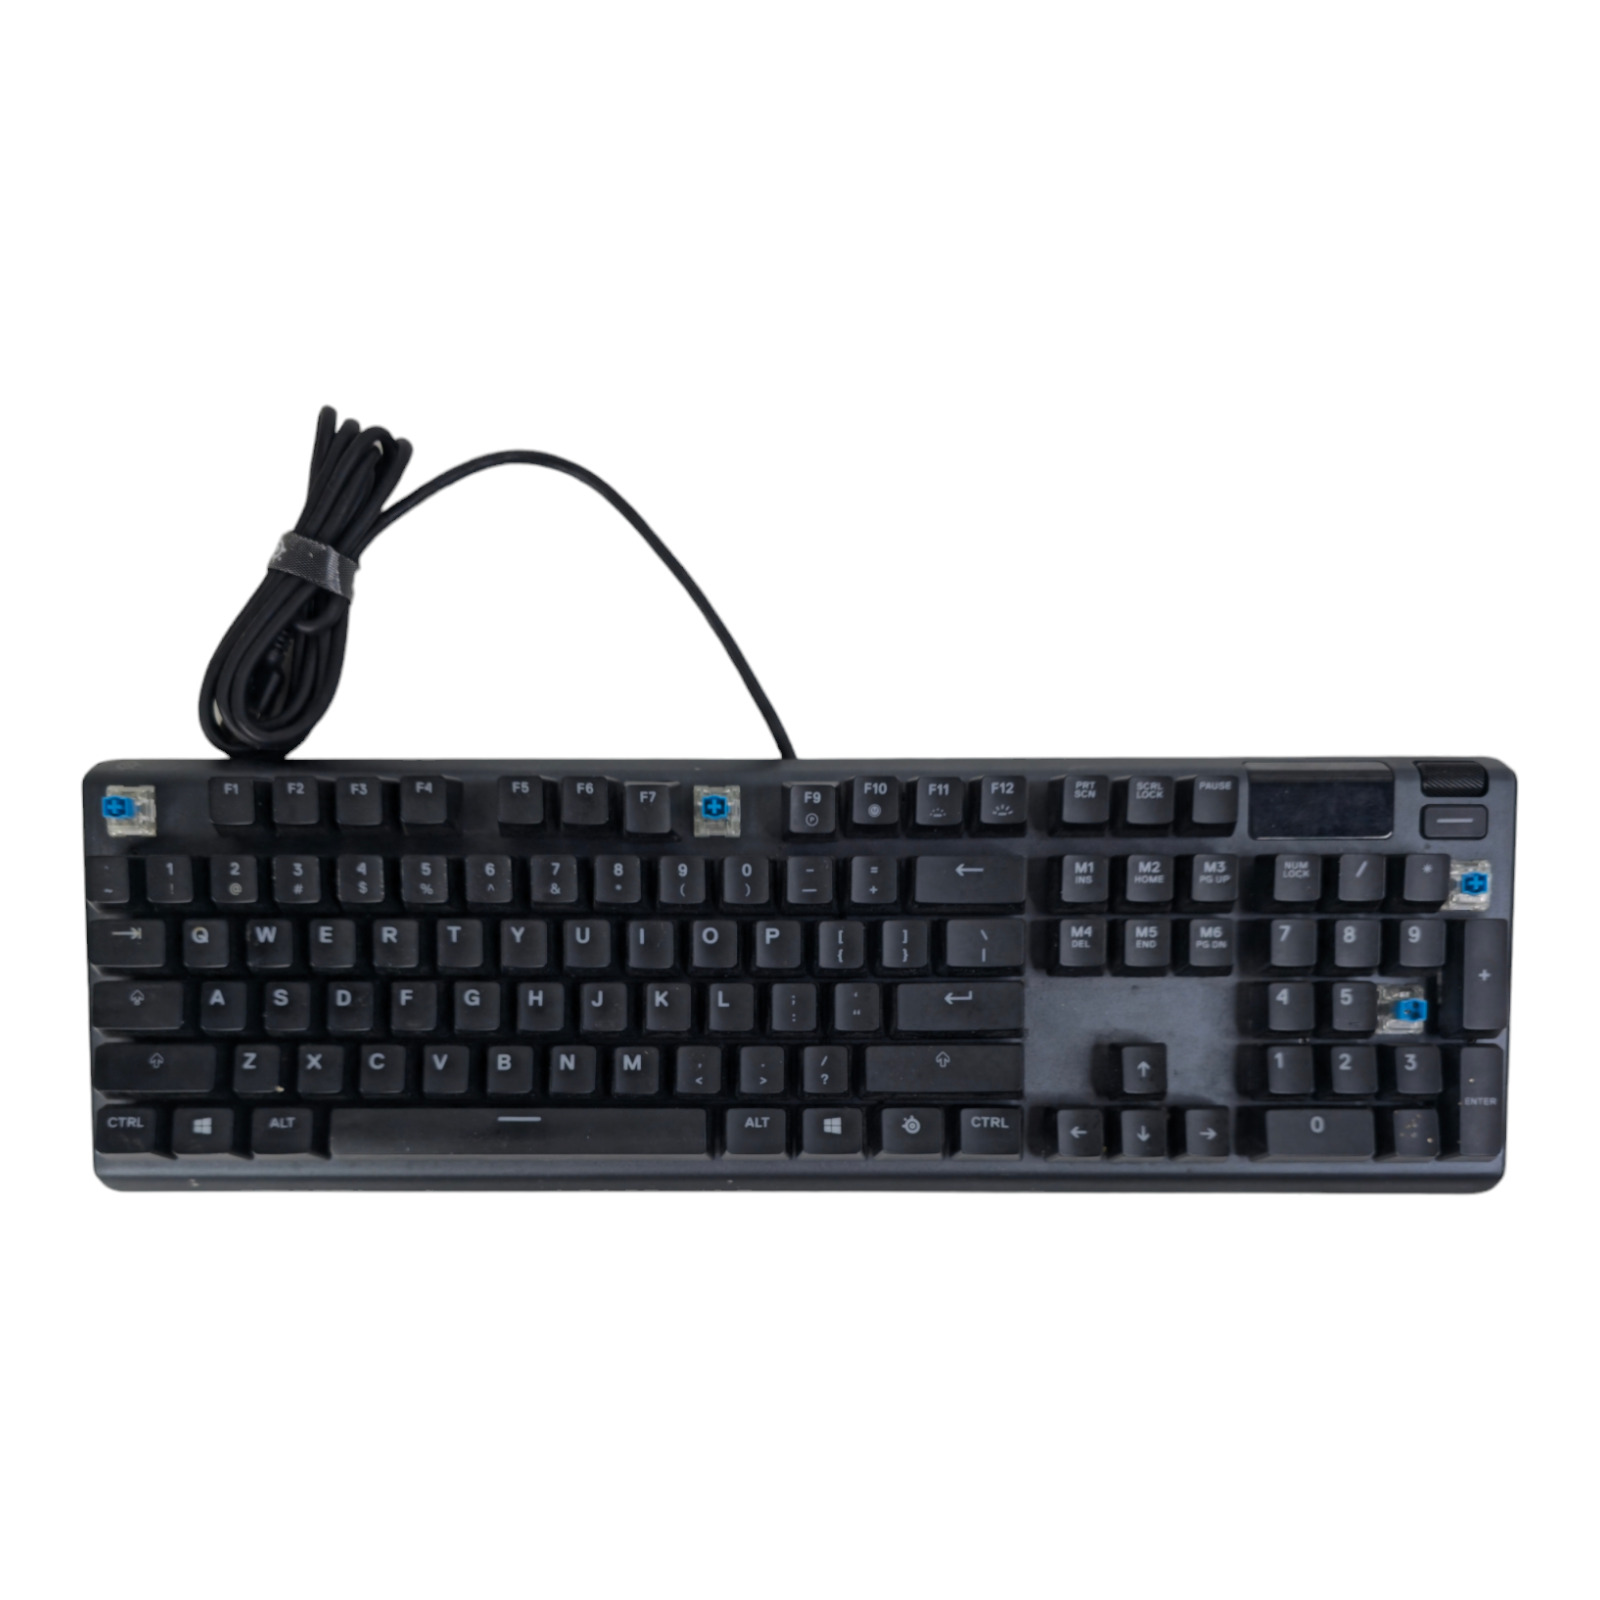 26 SteelSeries Apex 5 Mechanical Gaming Keyboard PerKey OLED RGB